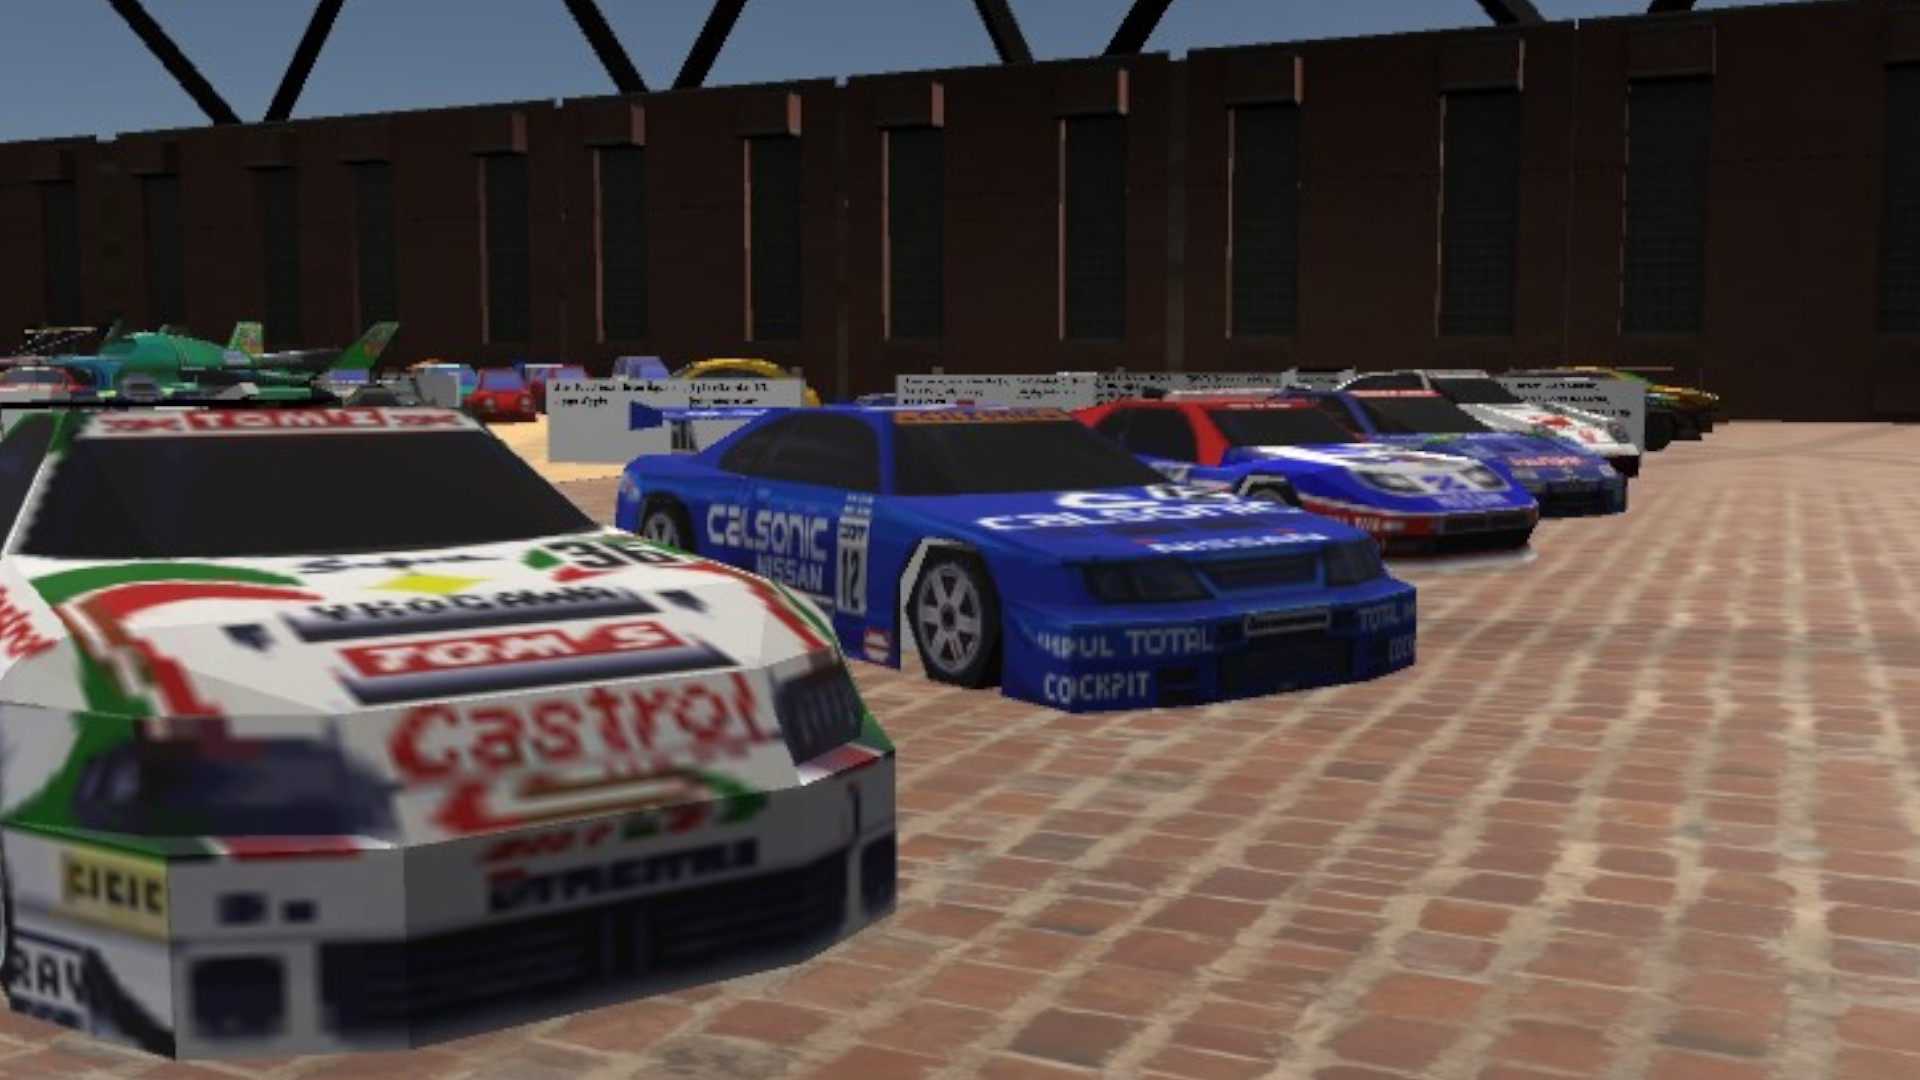 متحف السيارات 64 هو متحف افتراضي للسيارات من ألعاب نينتندو 64 45